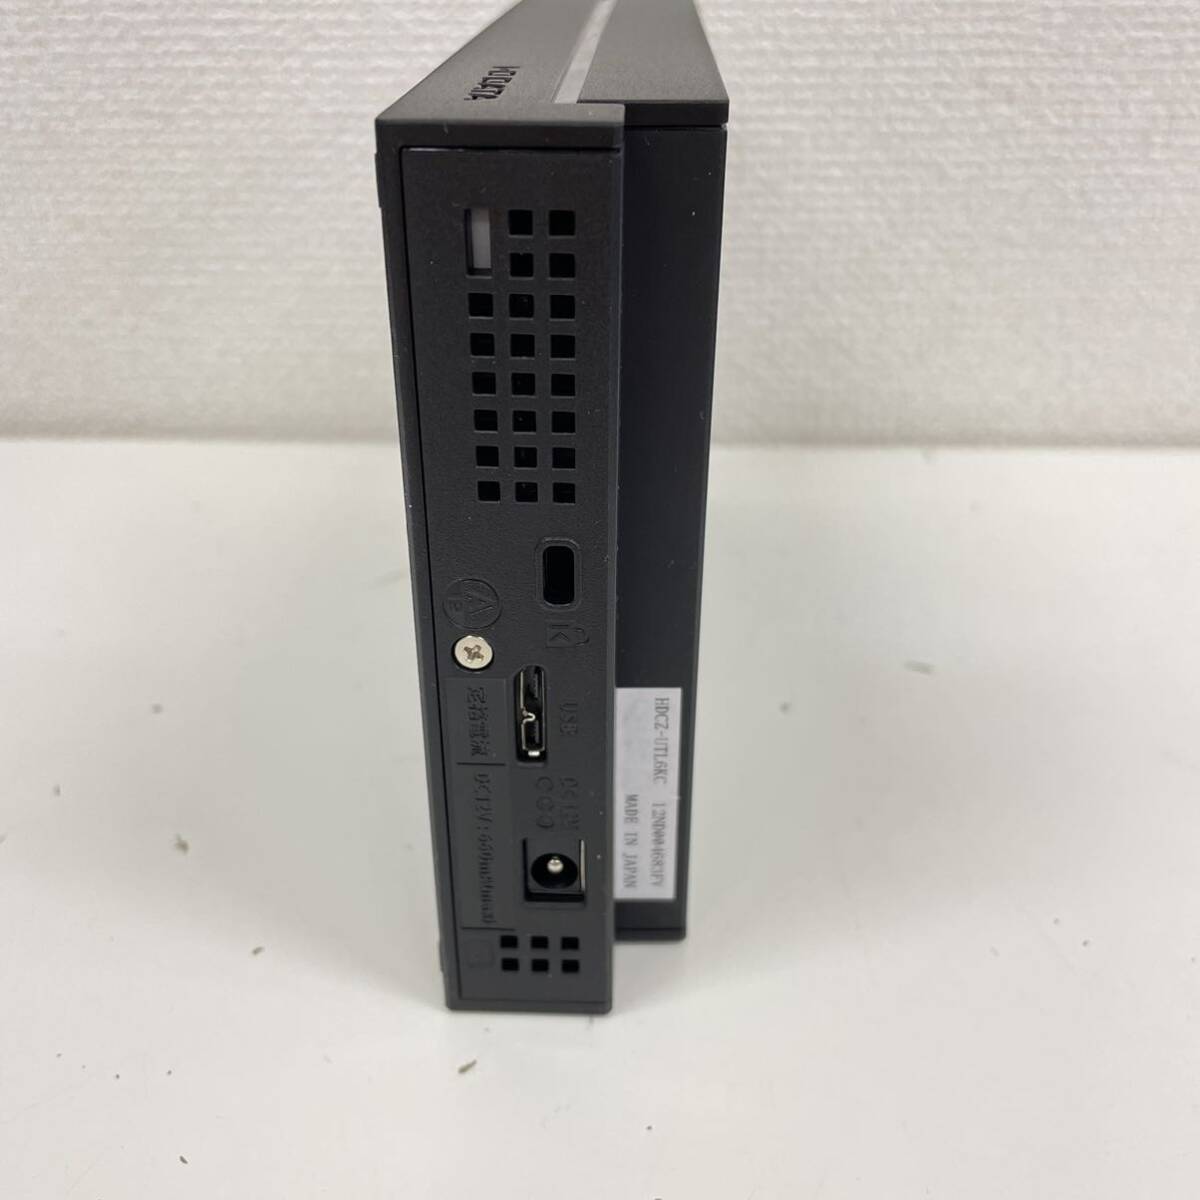 ① I*O DATE TV&PC вне есть жесткий диск 6TB HDCZ-UTL6KC USB установленный снаружи HDD установленный снаружи жесткий диск текущее состояние товар 